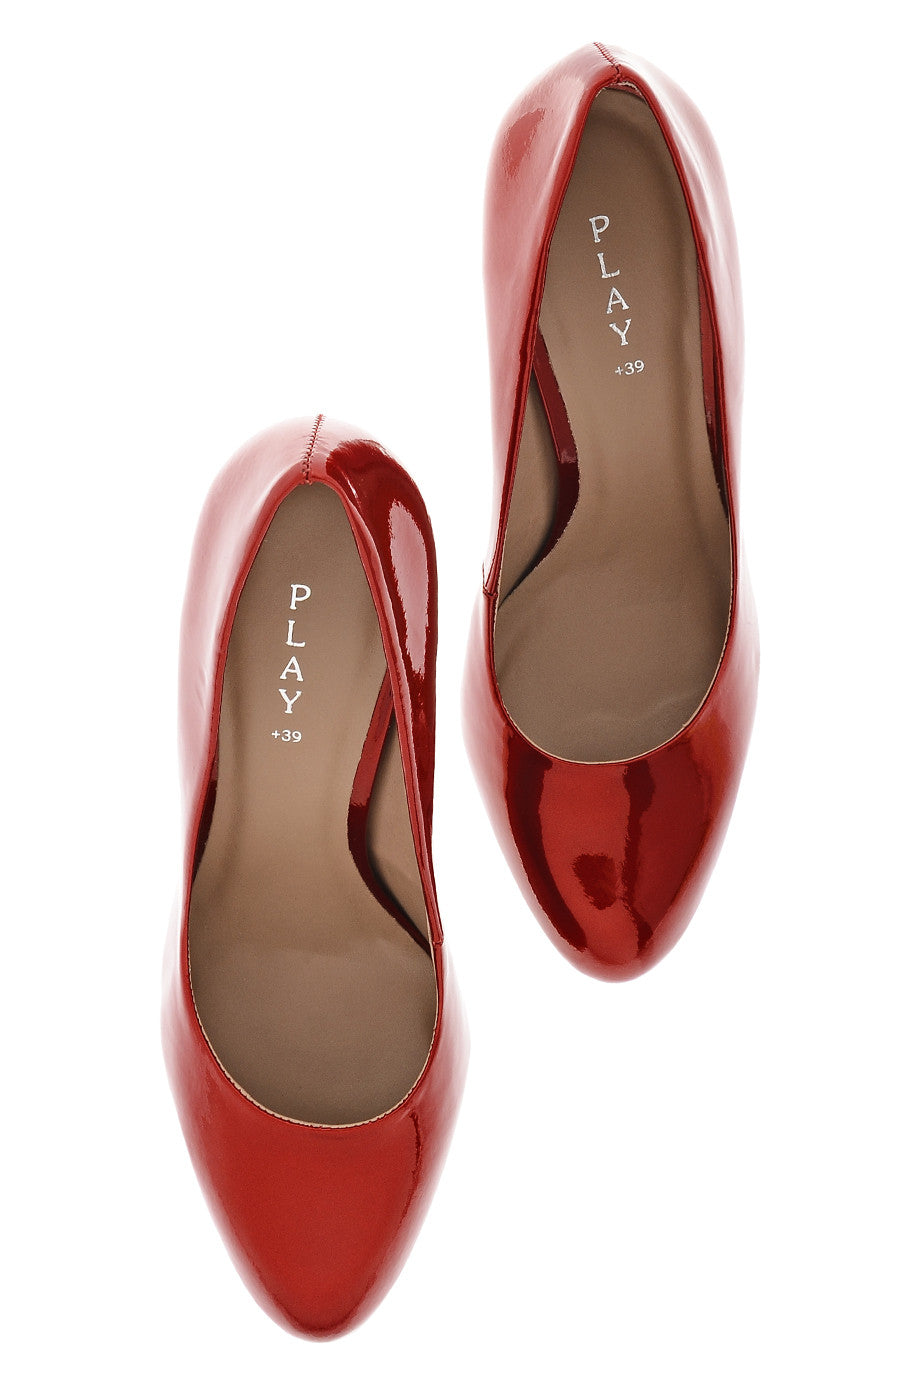 Κόκκινες Δερμάτινες Γόβες Λουστρίνι - Giovanni | Γυναικεία Παπούτσια